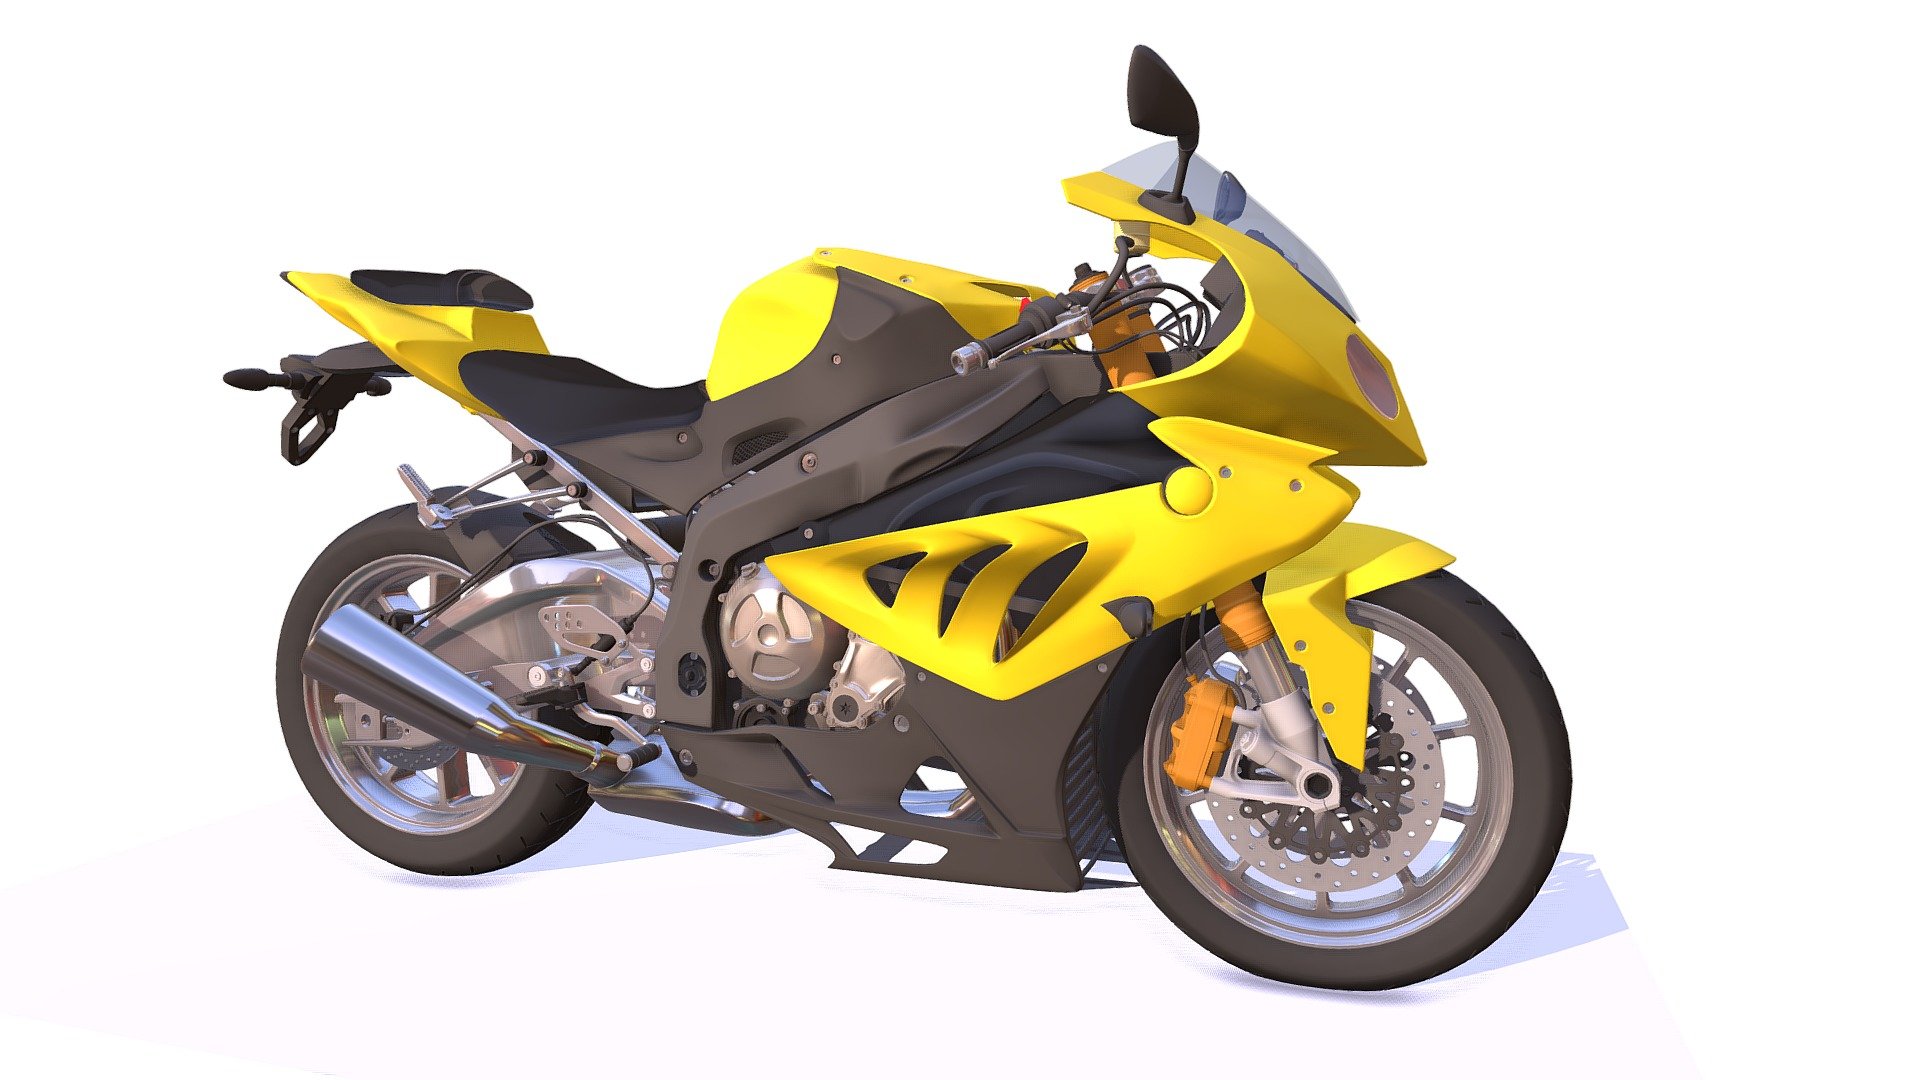 High quality 3d model of sport bik racing motorcycle.

Included Formats:

3ds Max - V-Ray

3ds Max - Default

3DS

Lightwave

OBJ

Softimage

Maya - Sport Bike Racing Motorcycle - Buy Royalty Free 3D model by 3DHorse 3d model